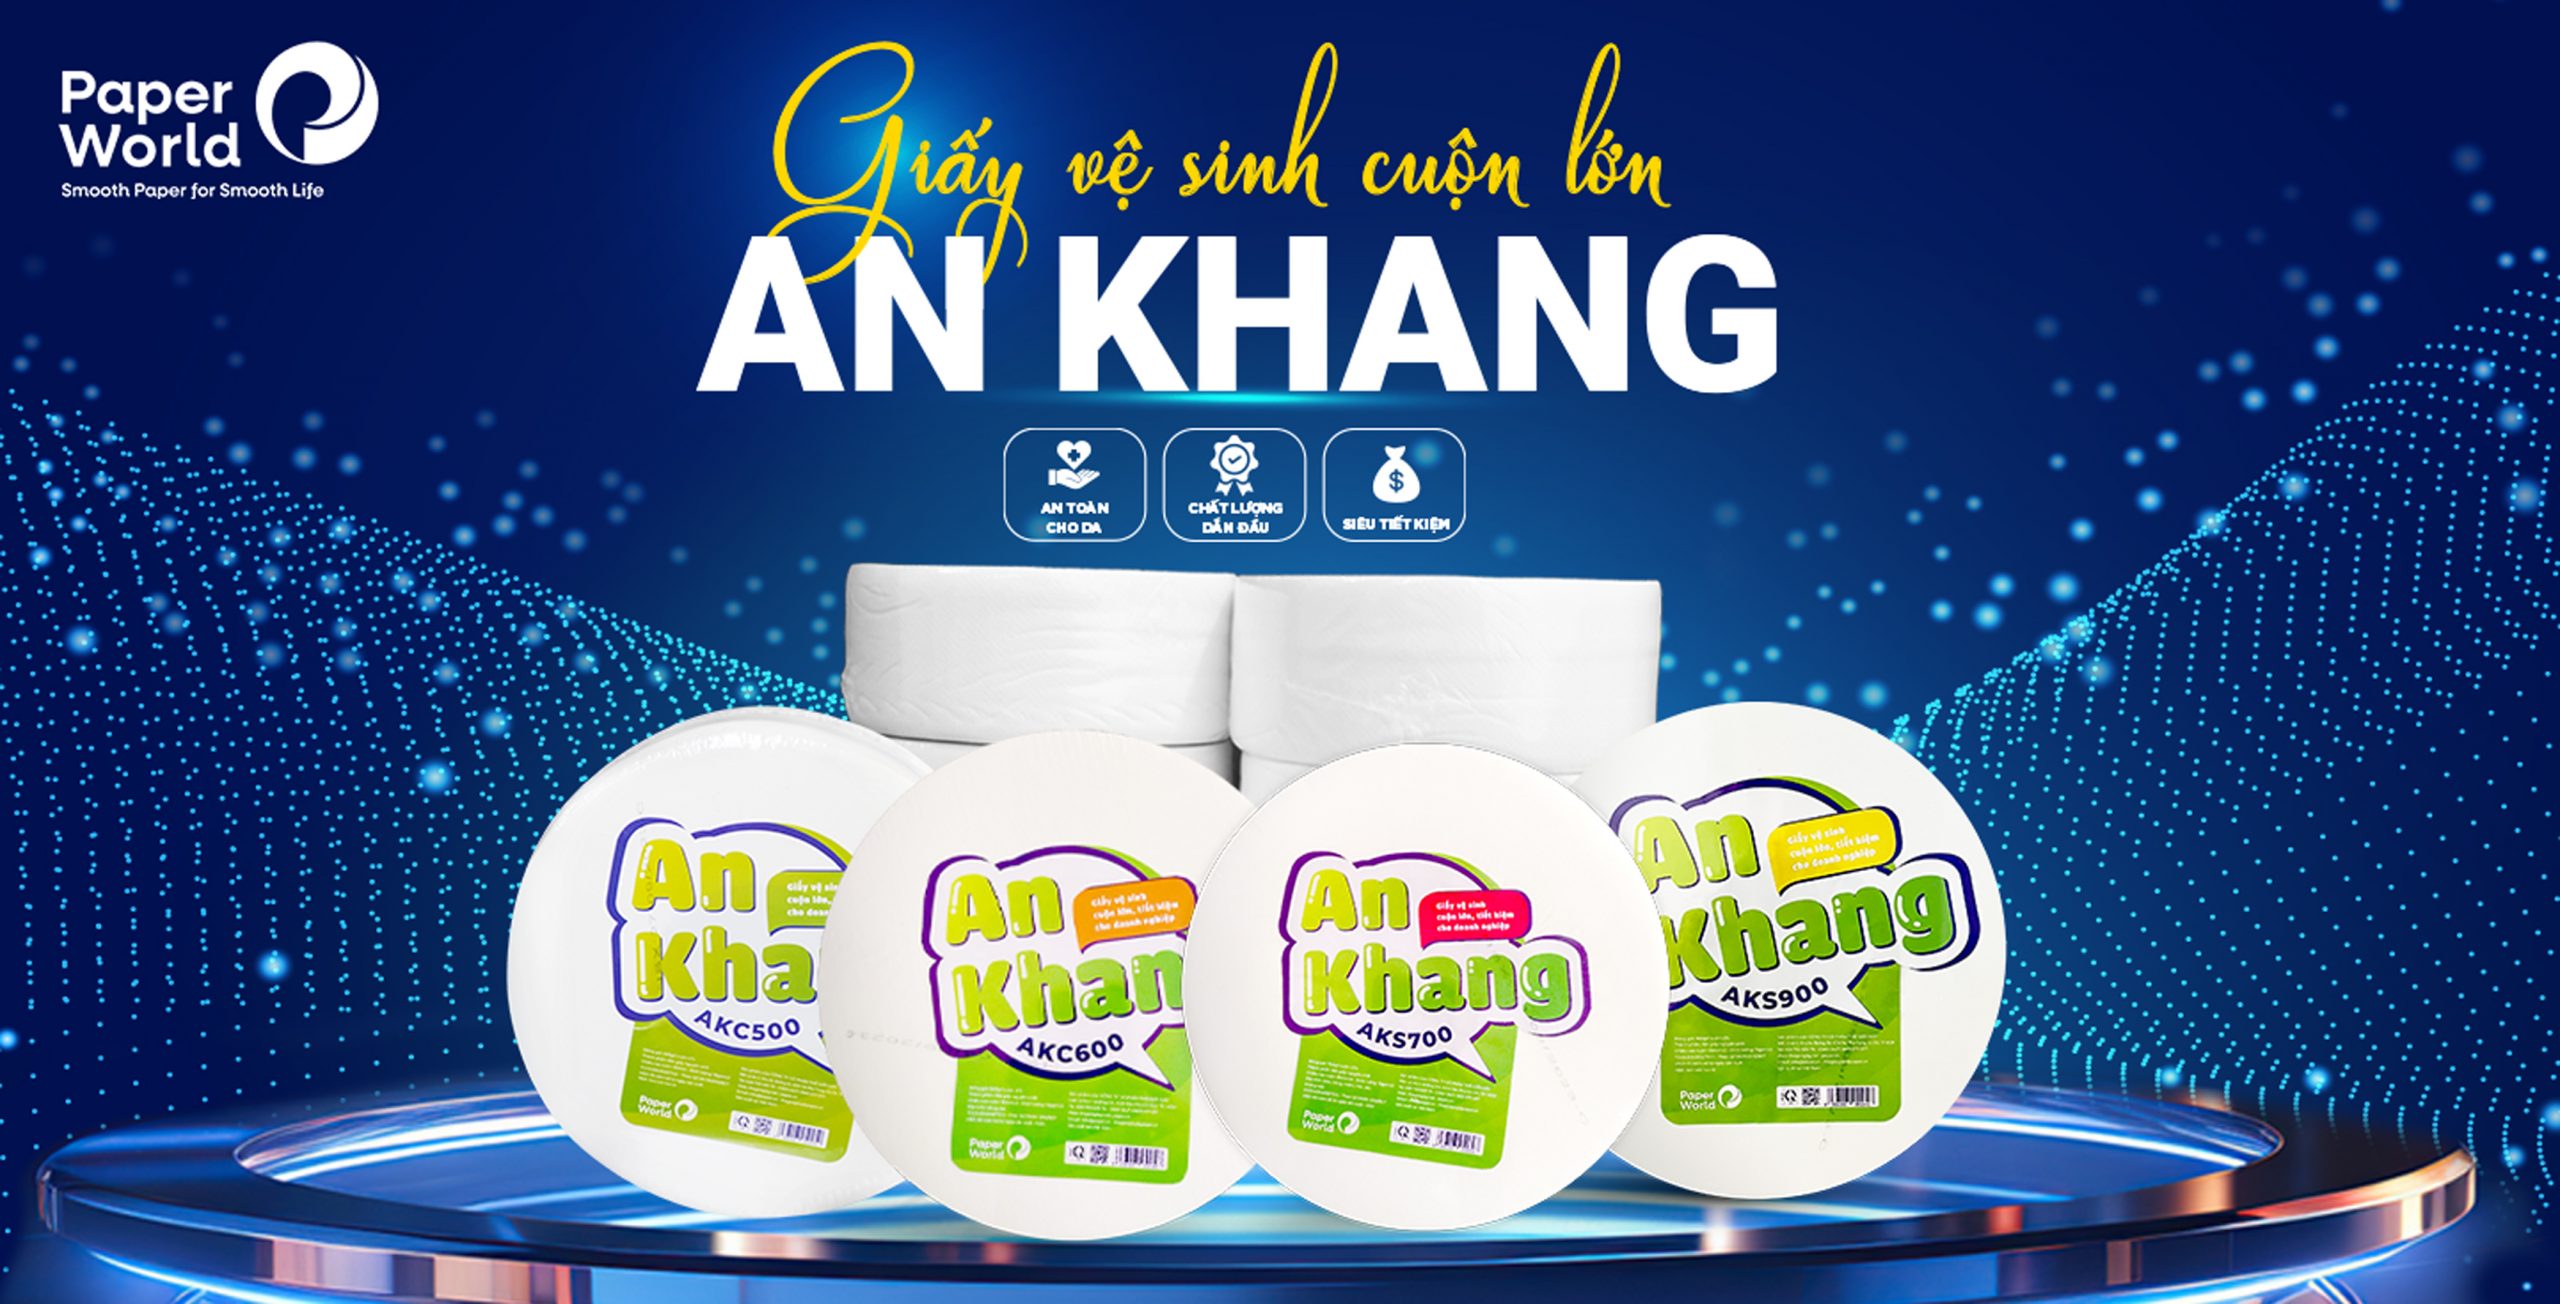 An Khang - giấy vệ sinh cuộn lớn đầu tiên ở Việt Nam